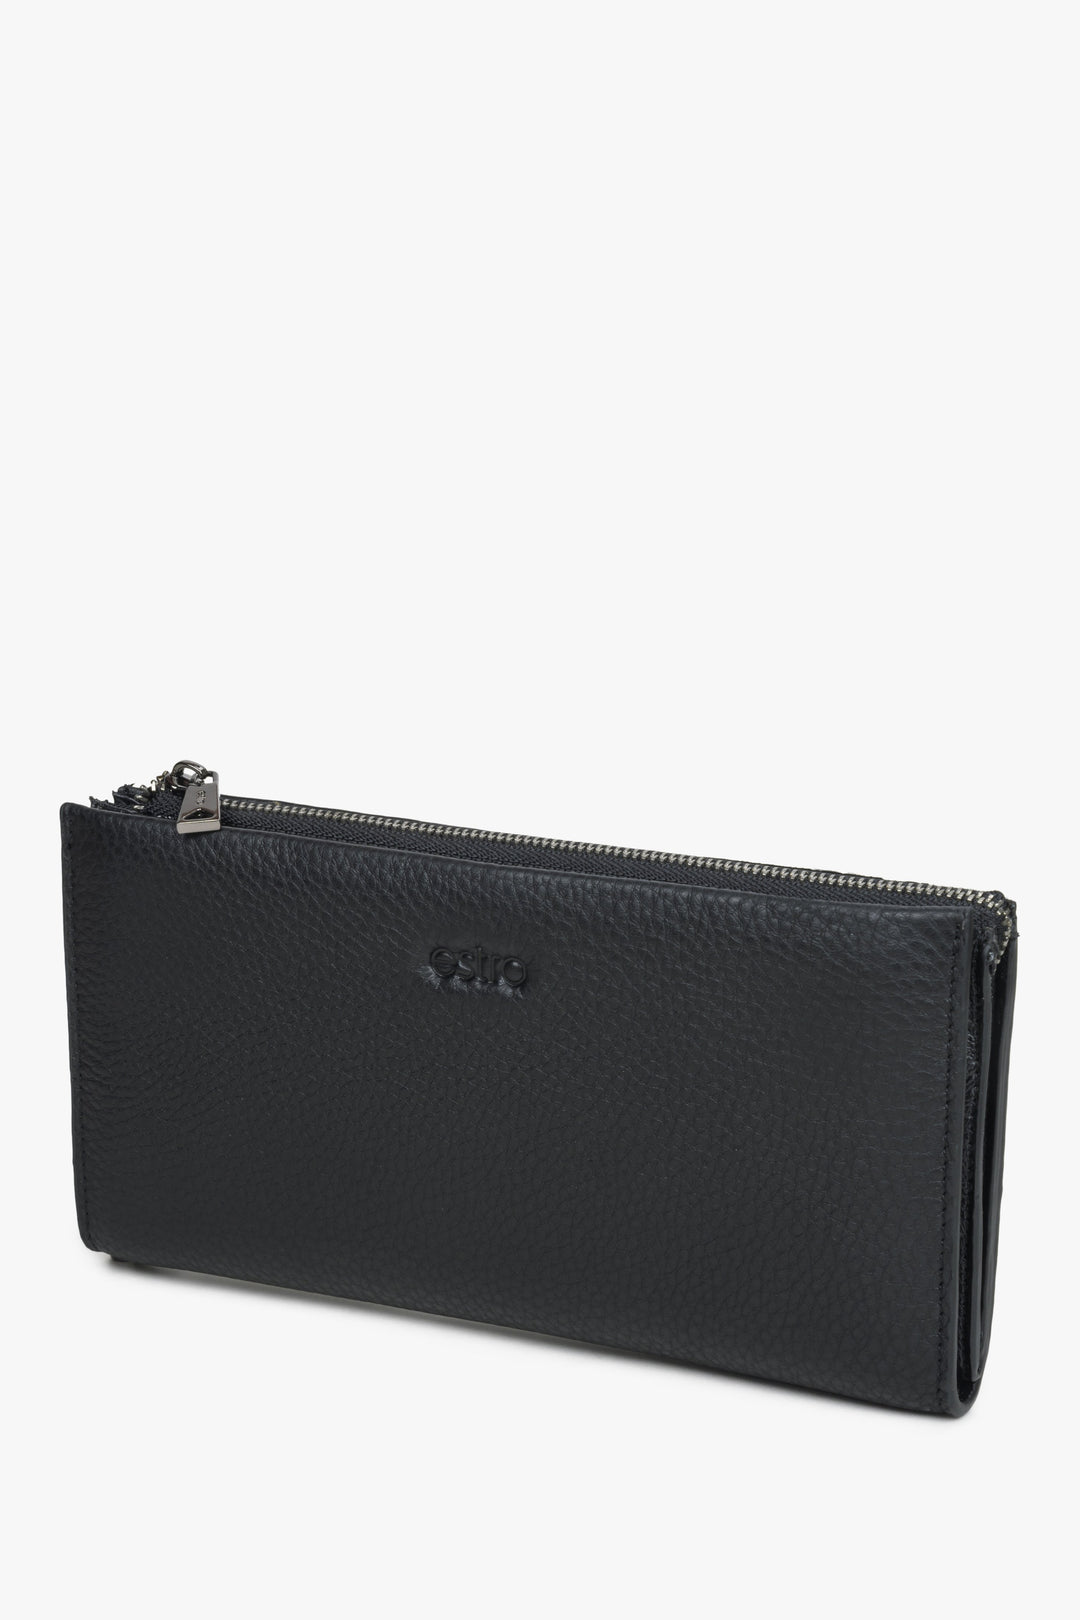 Duży skórzany portfel męski w kolorze czarnym Estro.